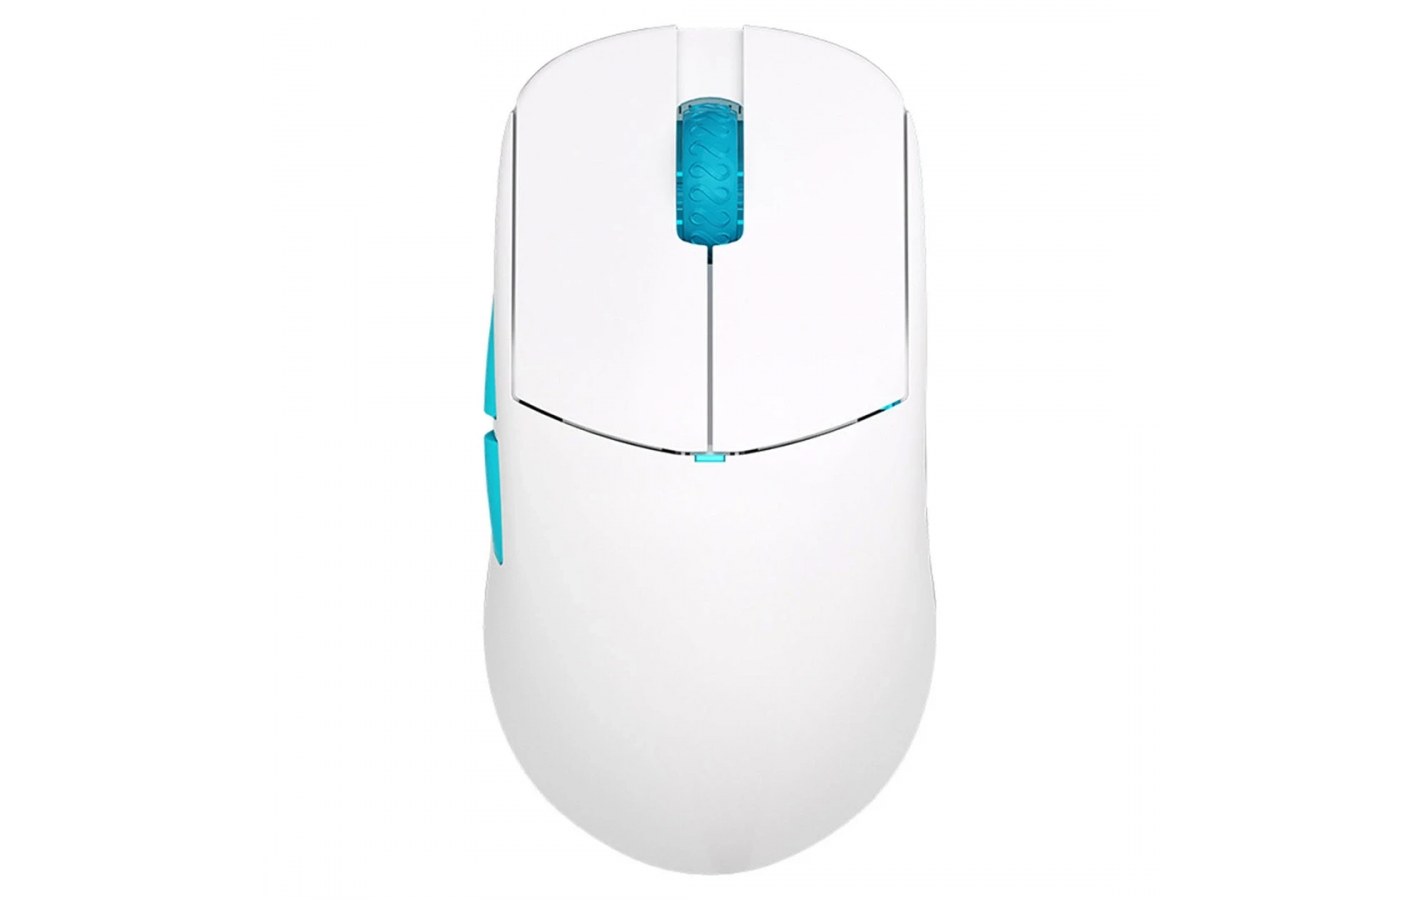 Беспроводная игровая мышь Lamzu Atlantis OG V2 Pro - Polar White (поддерживает 4К) PixArt PAW 3395